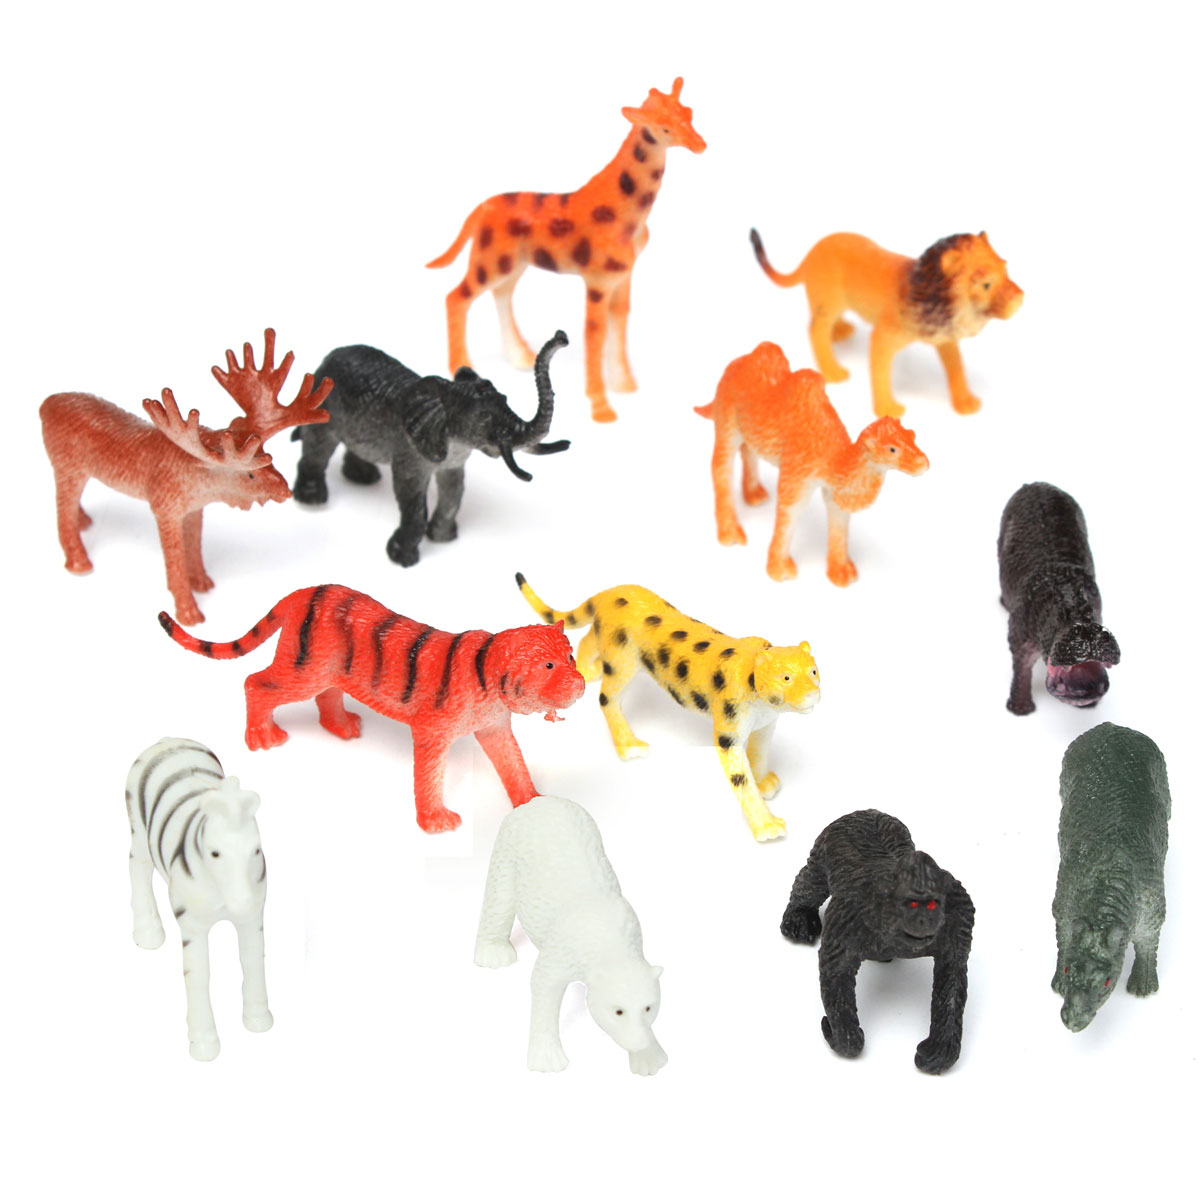 12-Small-plastic-Zoo-Safari-animals-Lion-Tiger-Leopard-Hippo-Giraffe-figures-1021567